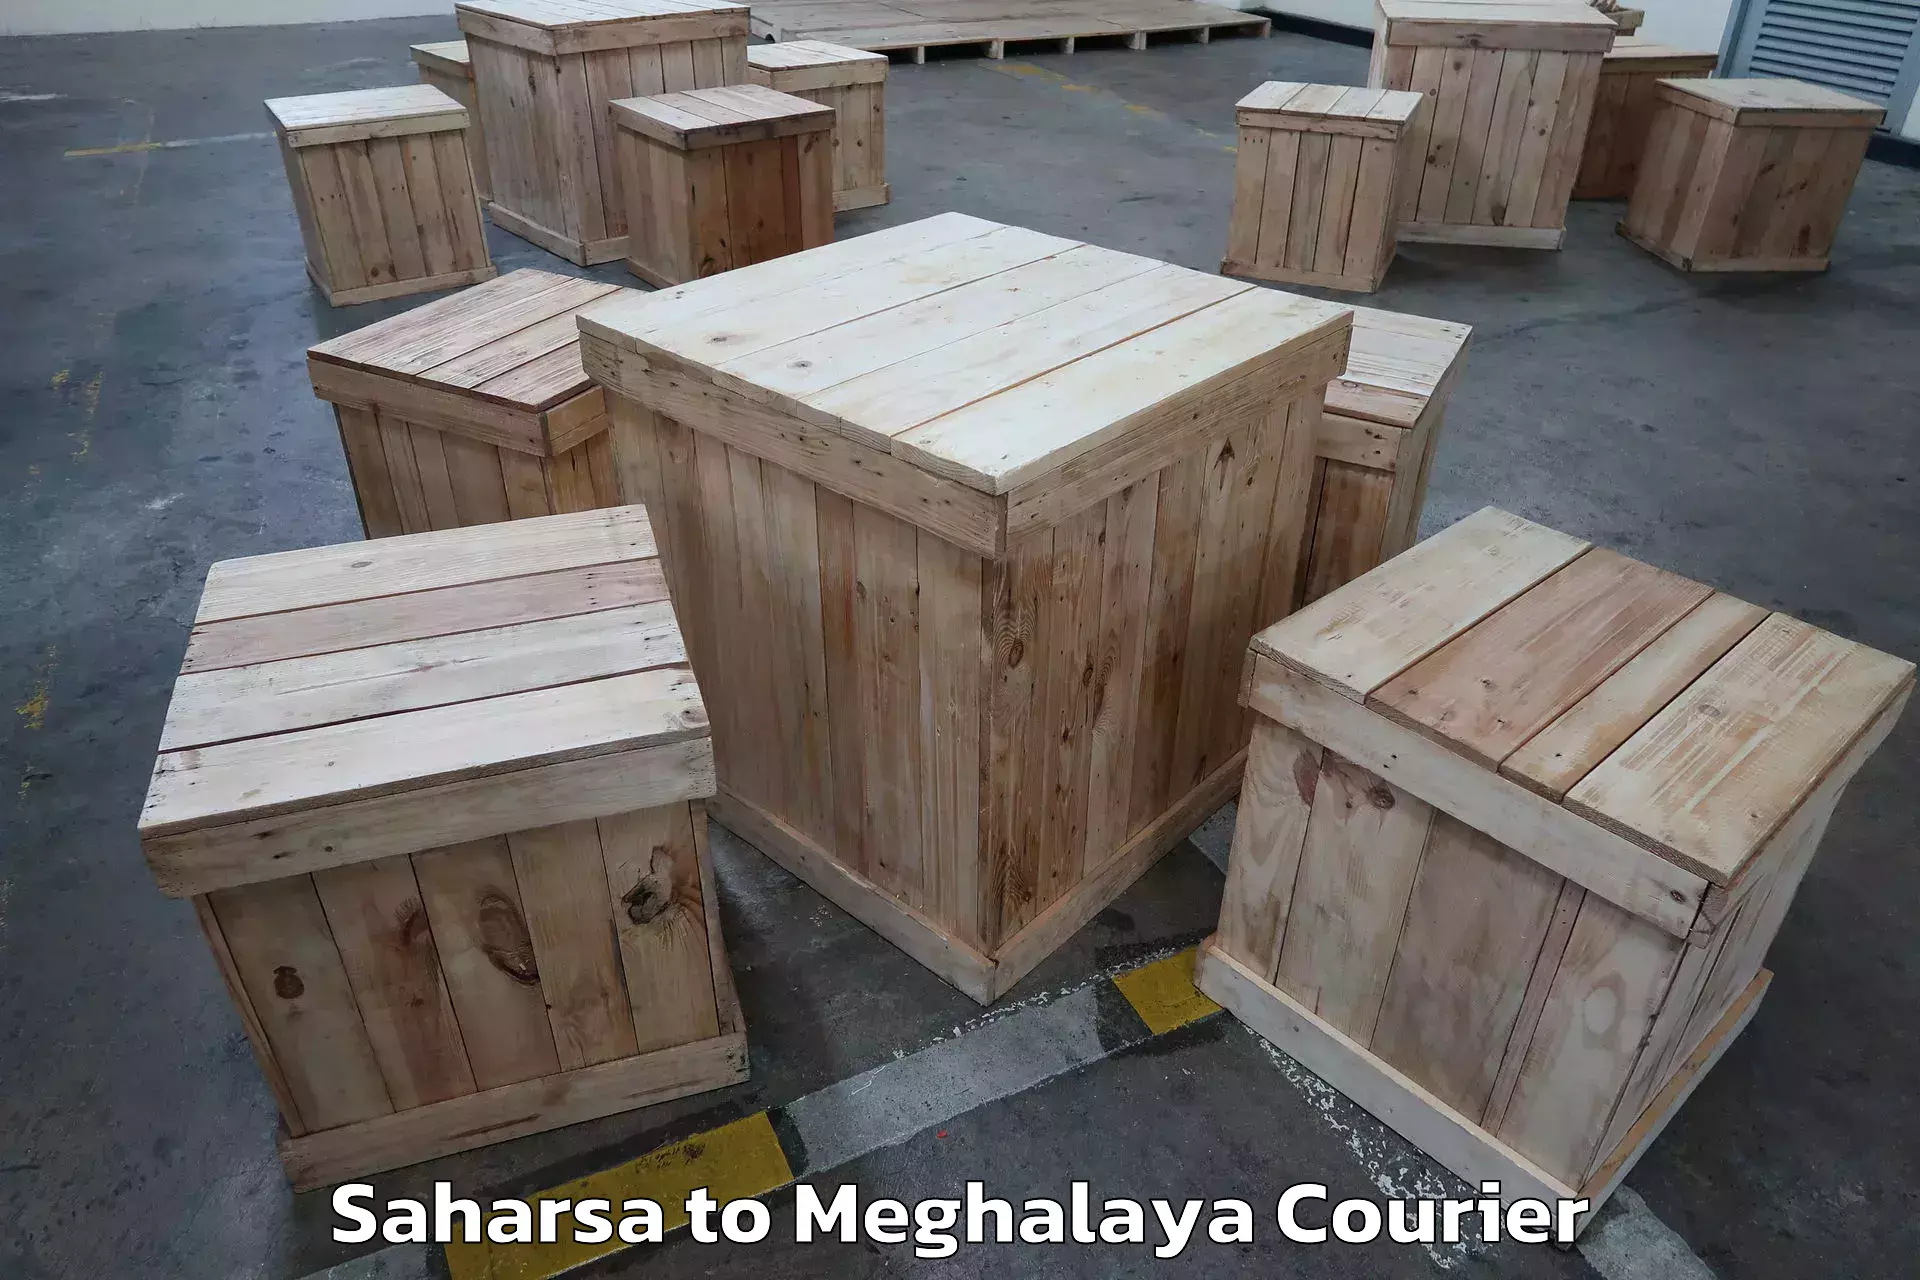 Furniture transport experts Saharsa to Shillong